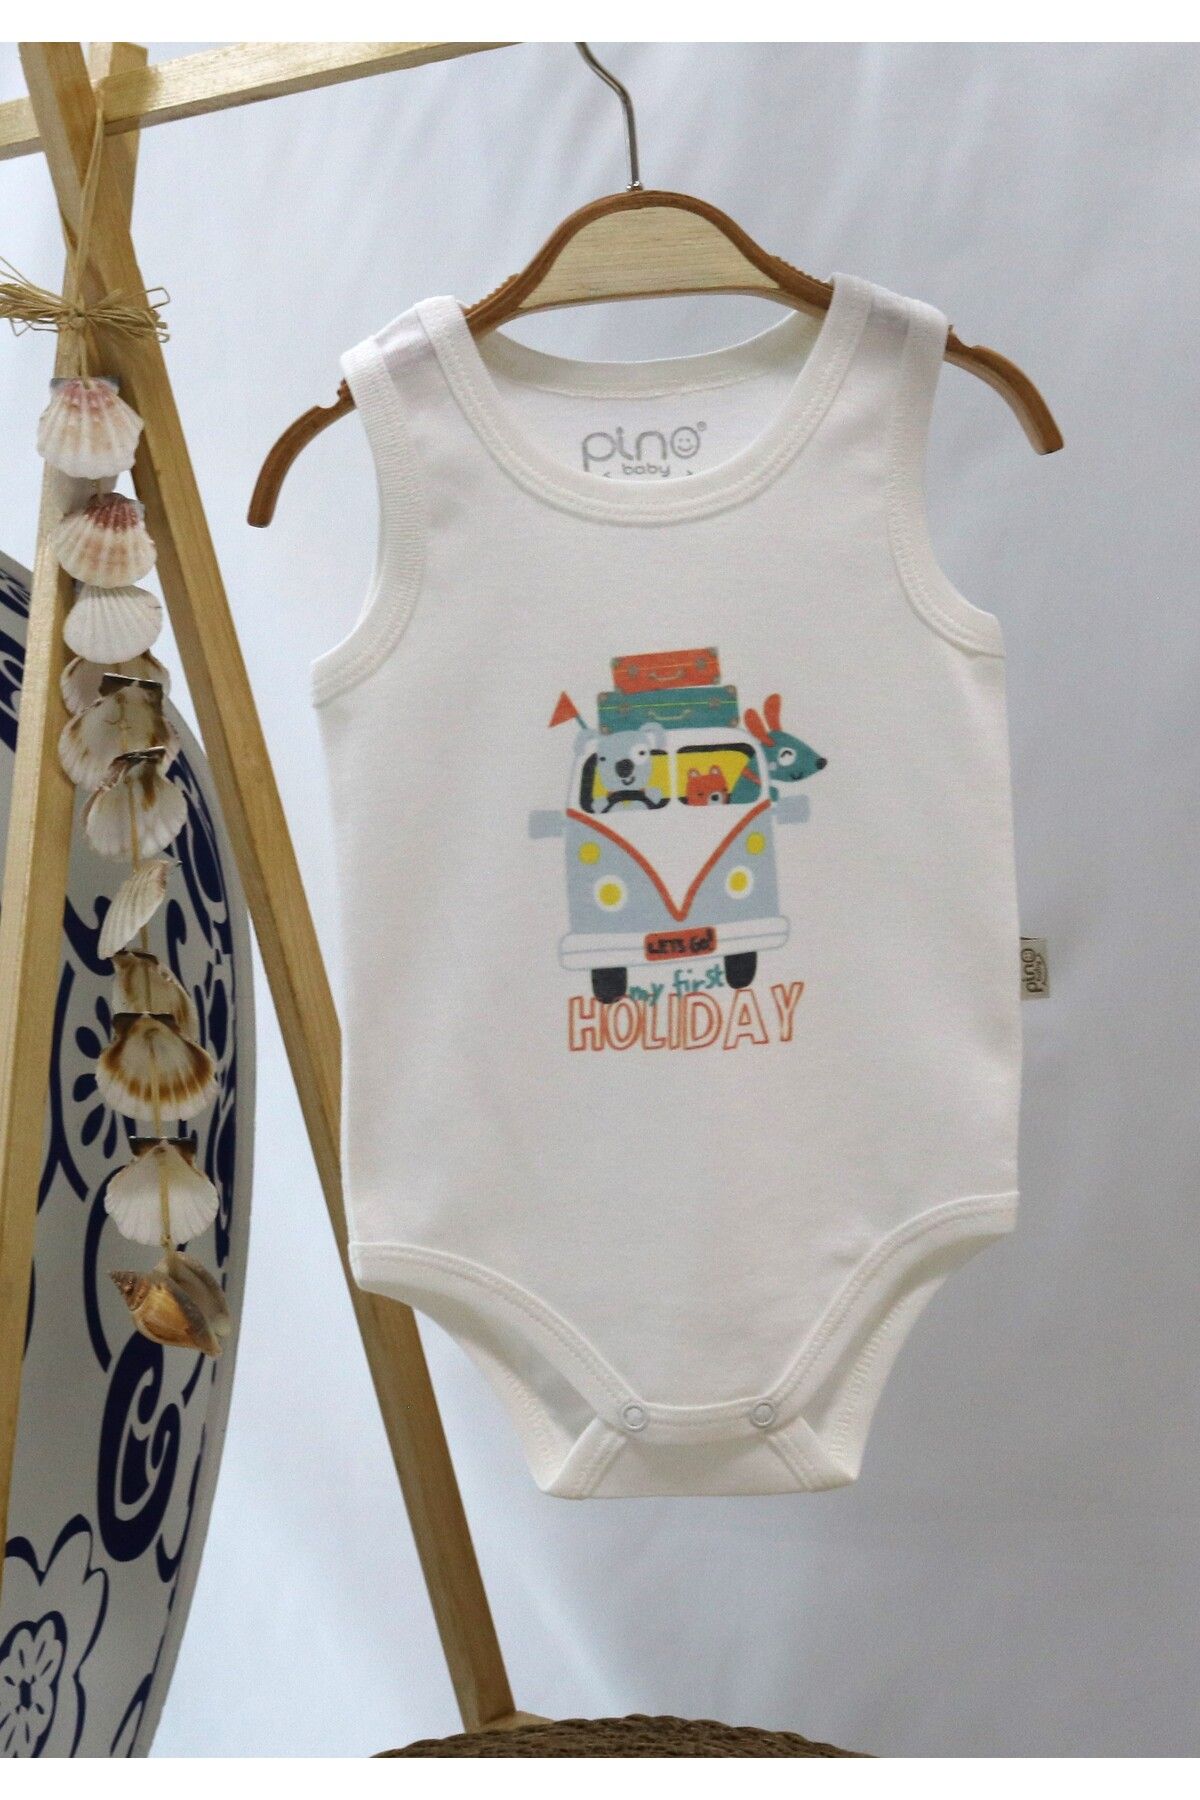 Pino Baby Dijital Baskılı Atlet Bebek Body